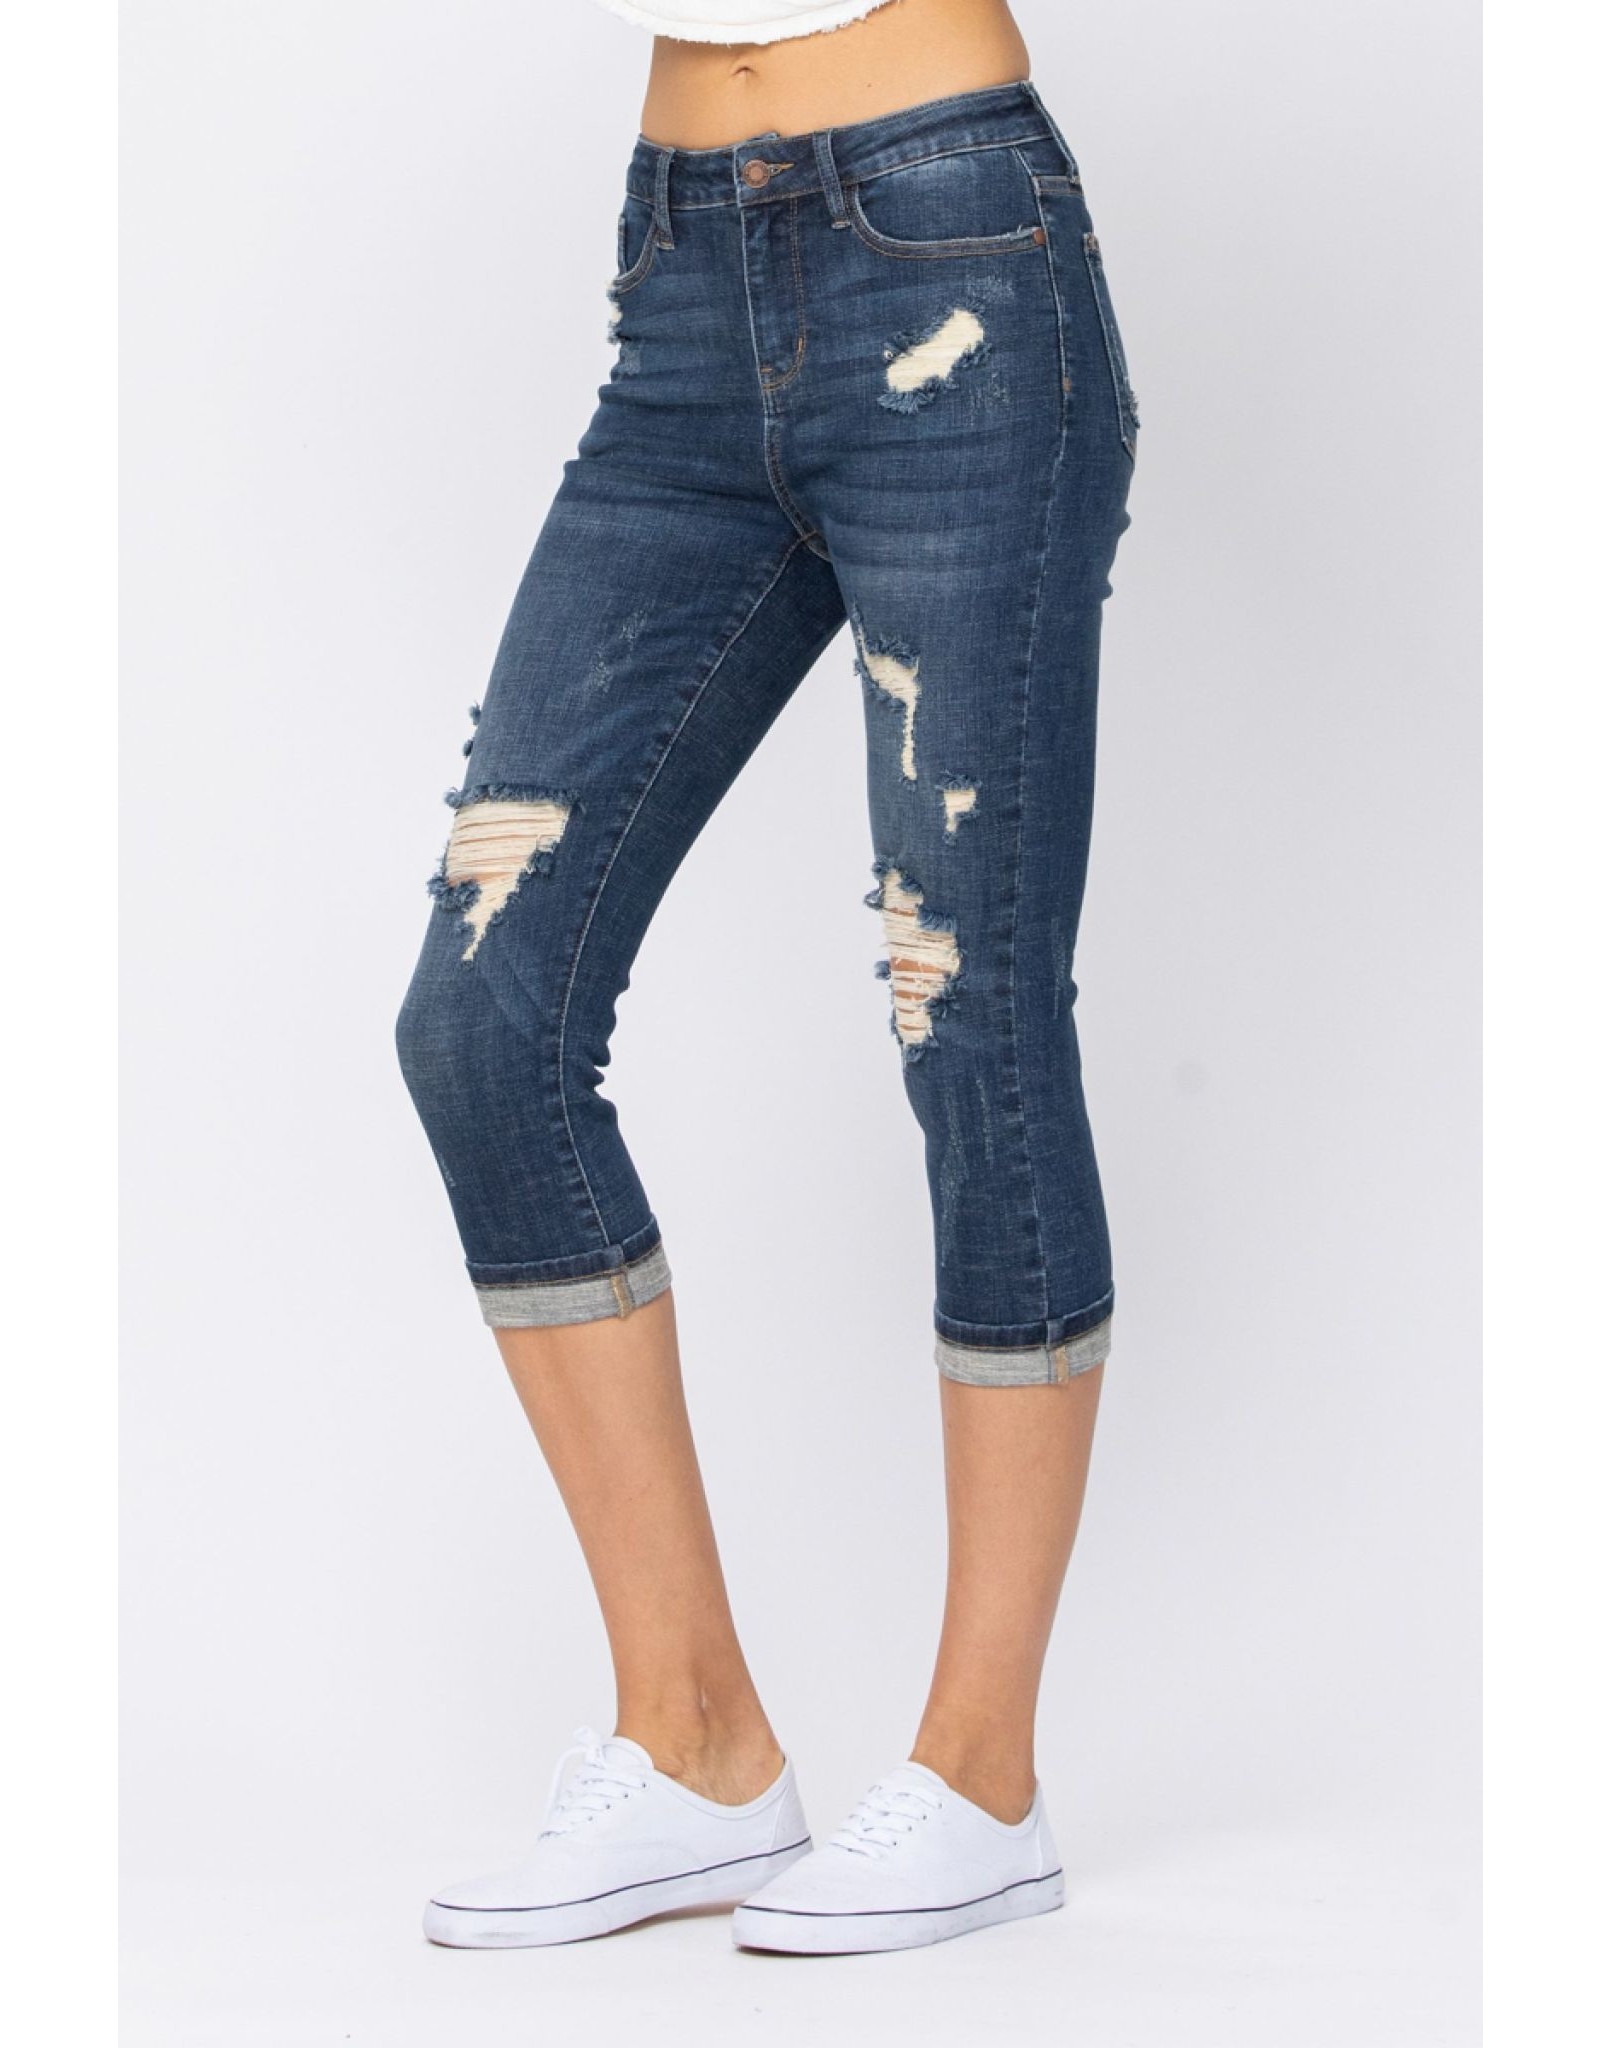 Judy Blue Distressed Capri Jeans